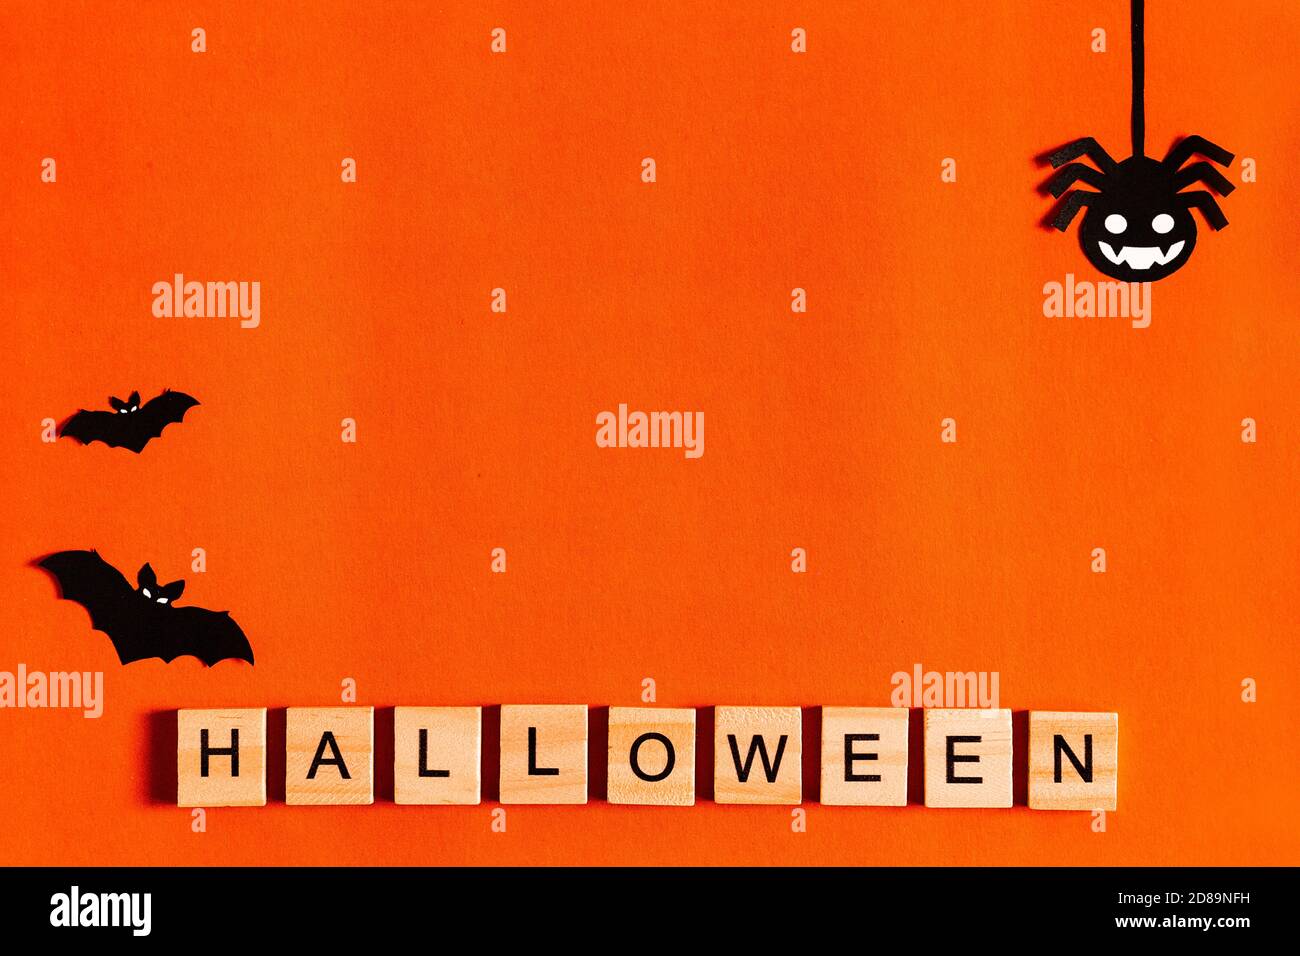 Lettrage Halloween sur fond orange avec silhouettes en papier noir, chauves-souris, citrouille, araignée. Le concept de Halloween. La vue du dessus Banque D'Images